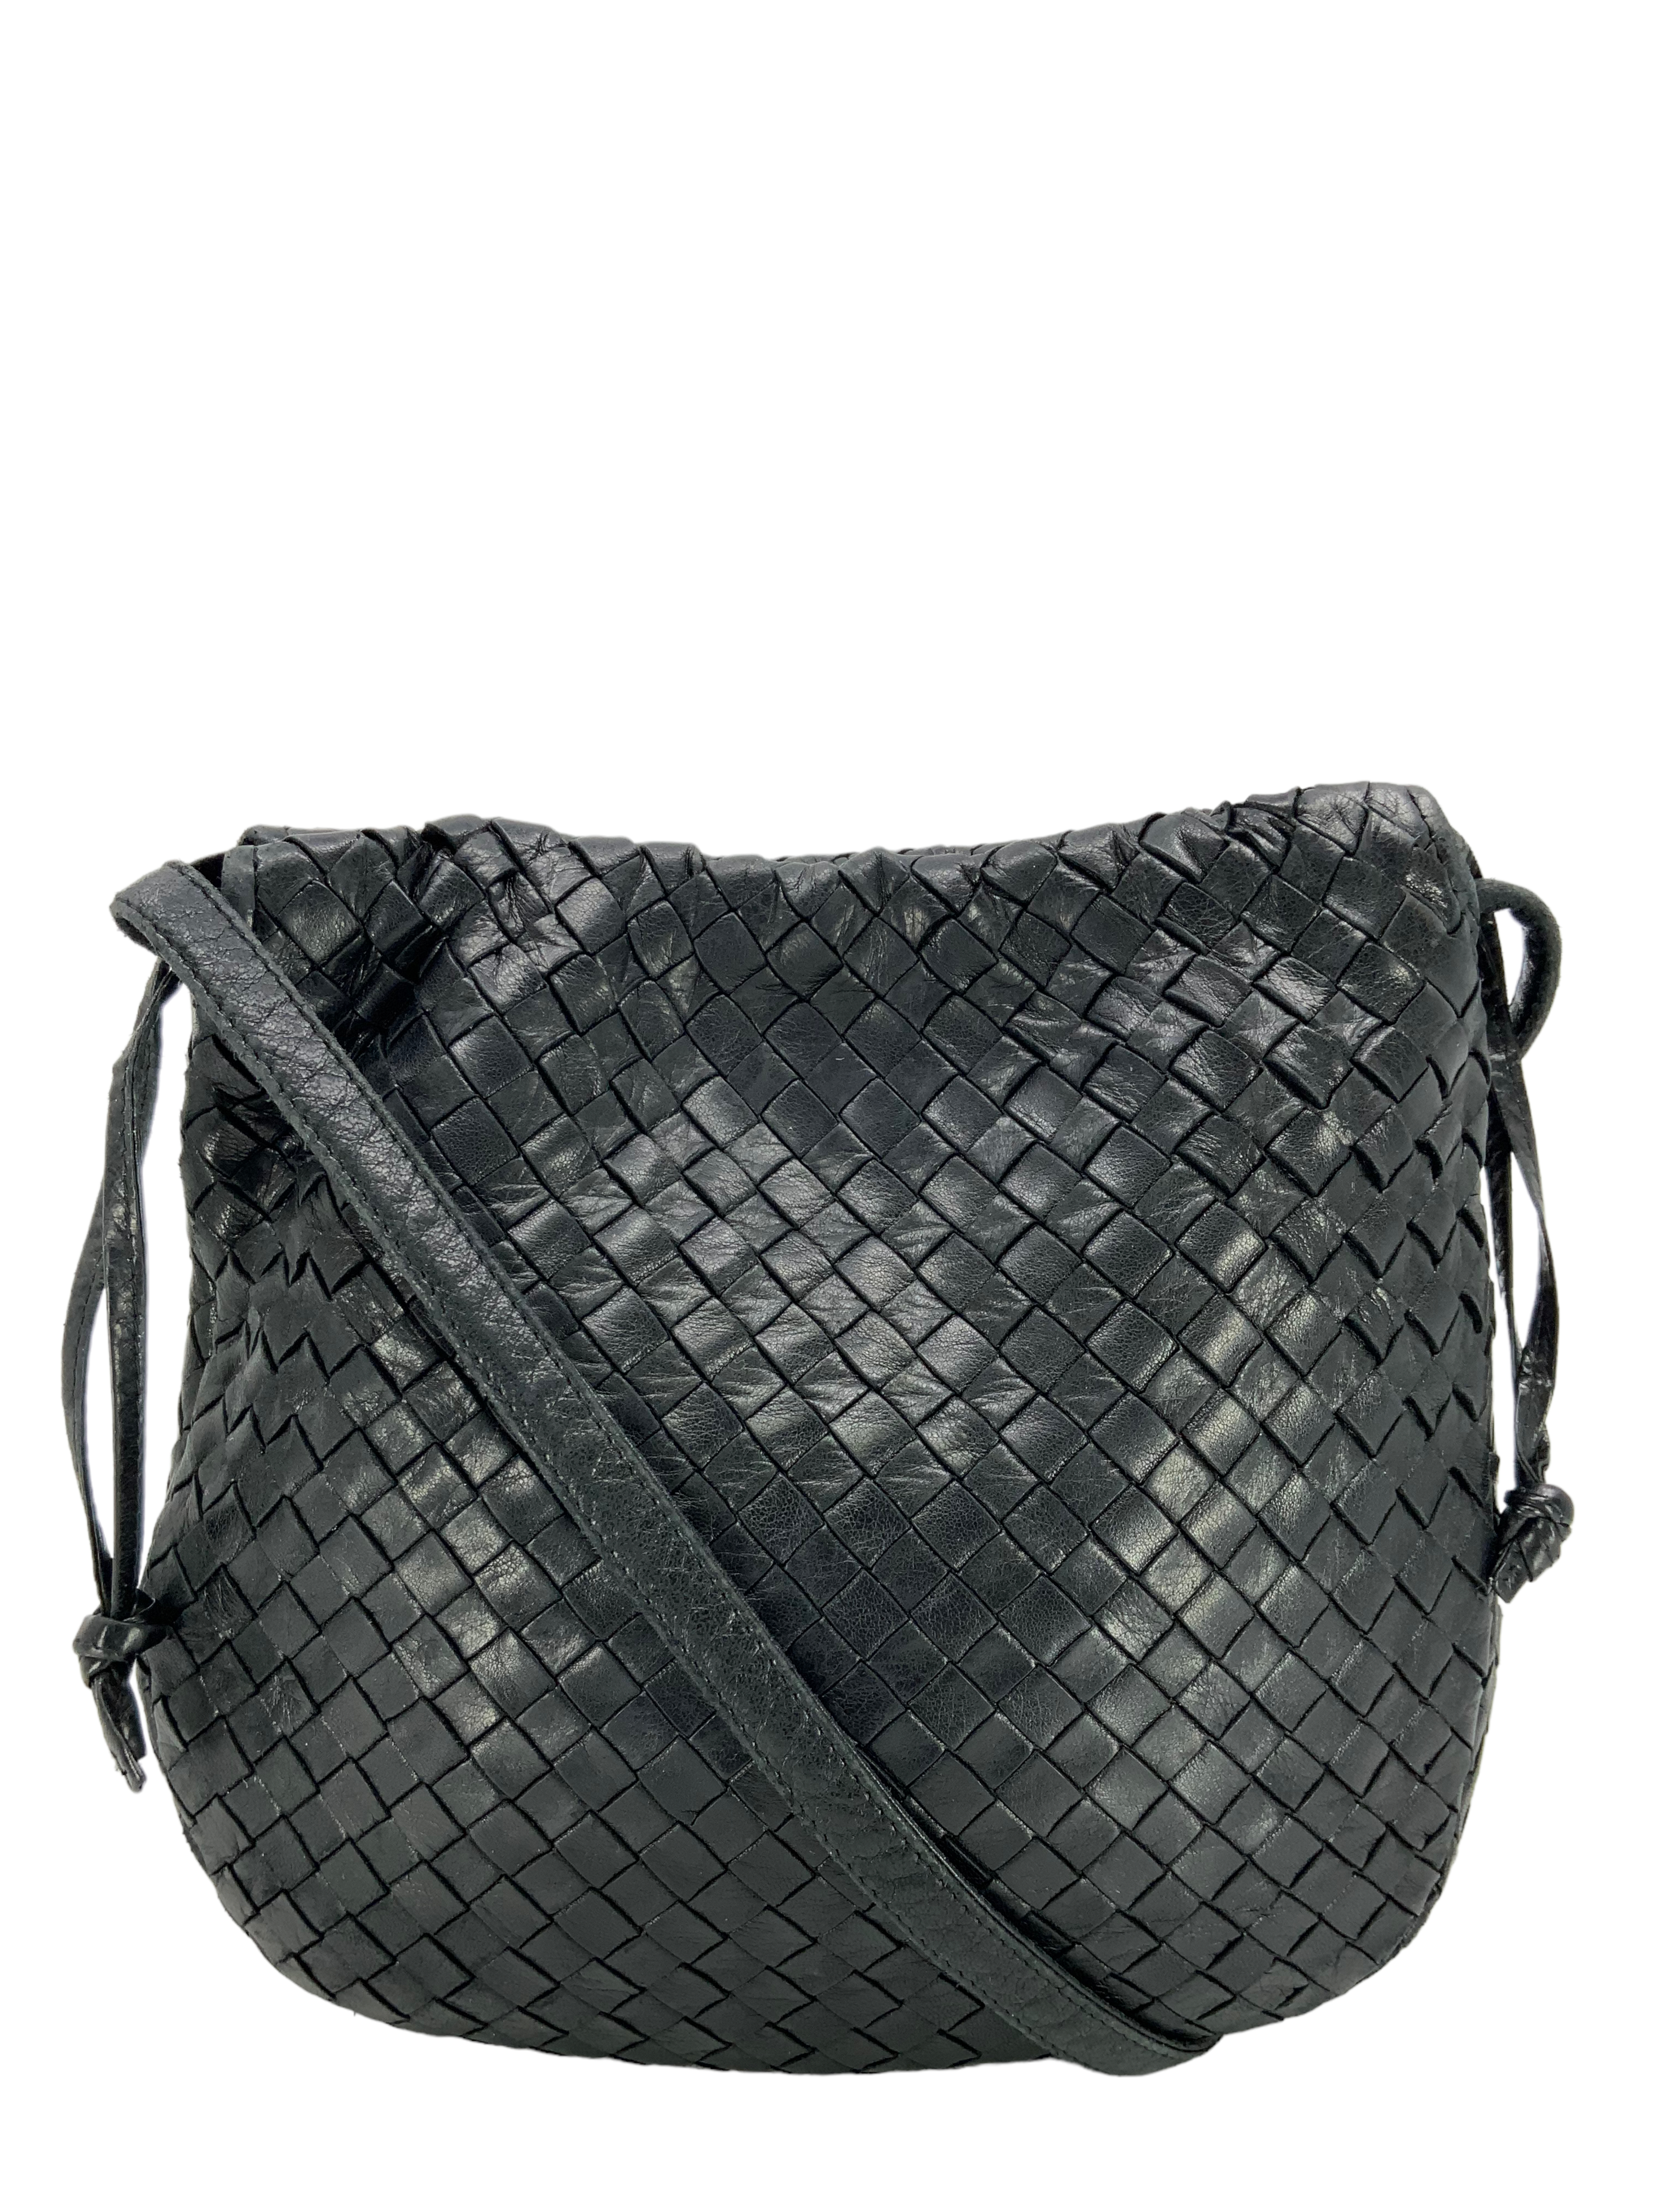 Bottega Veneta Biletto Intrecciato Nappa Clutch Bag Black in Nappa Leather  with Matte Gunmetal - US